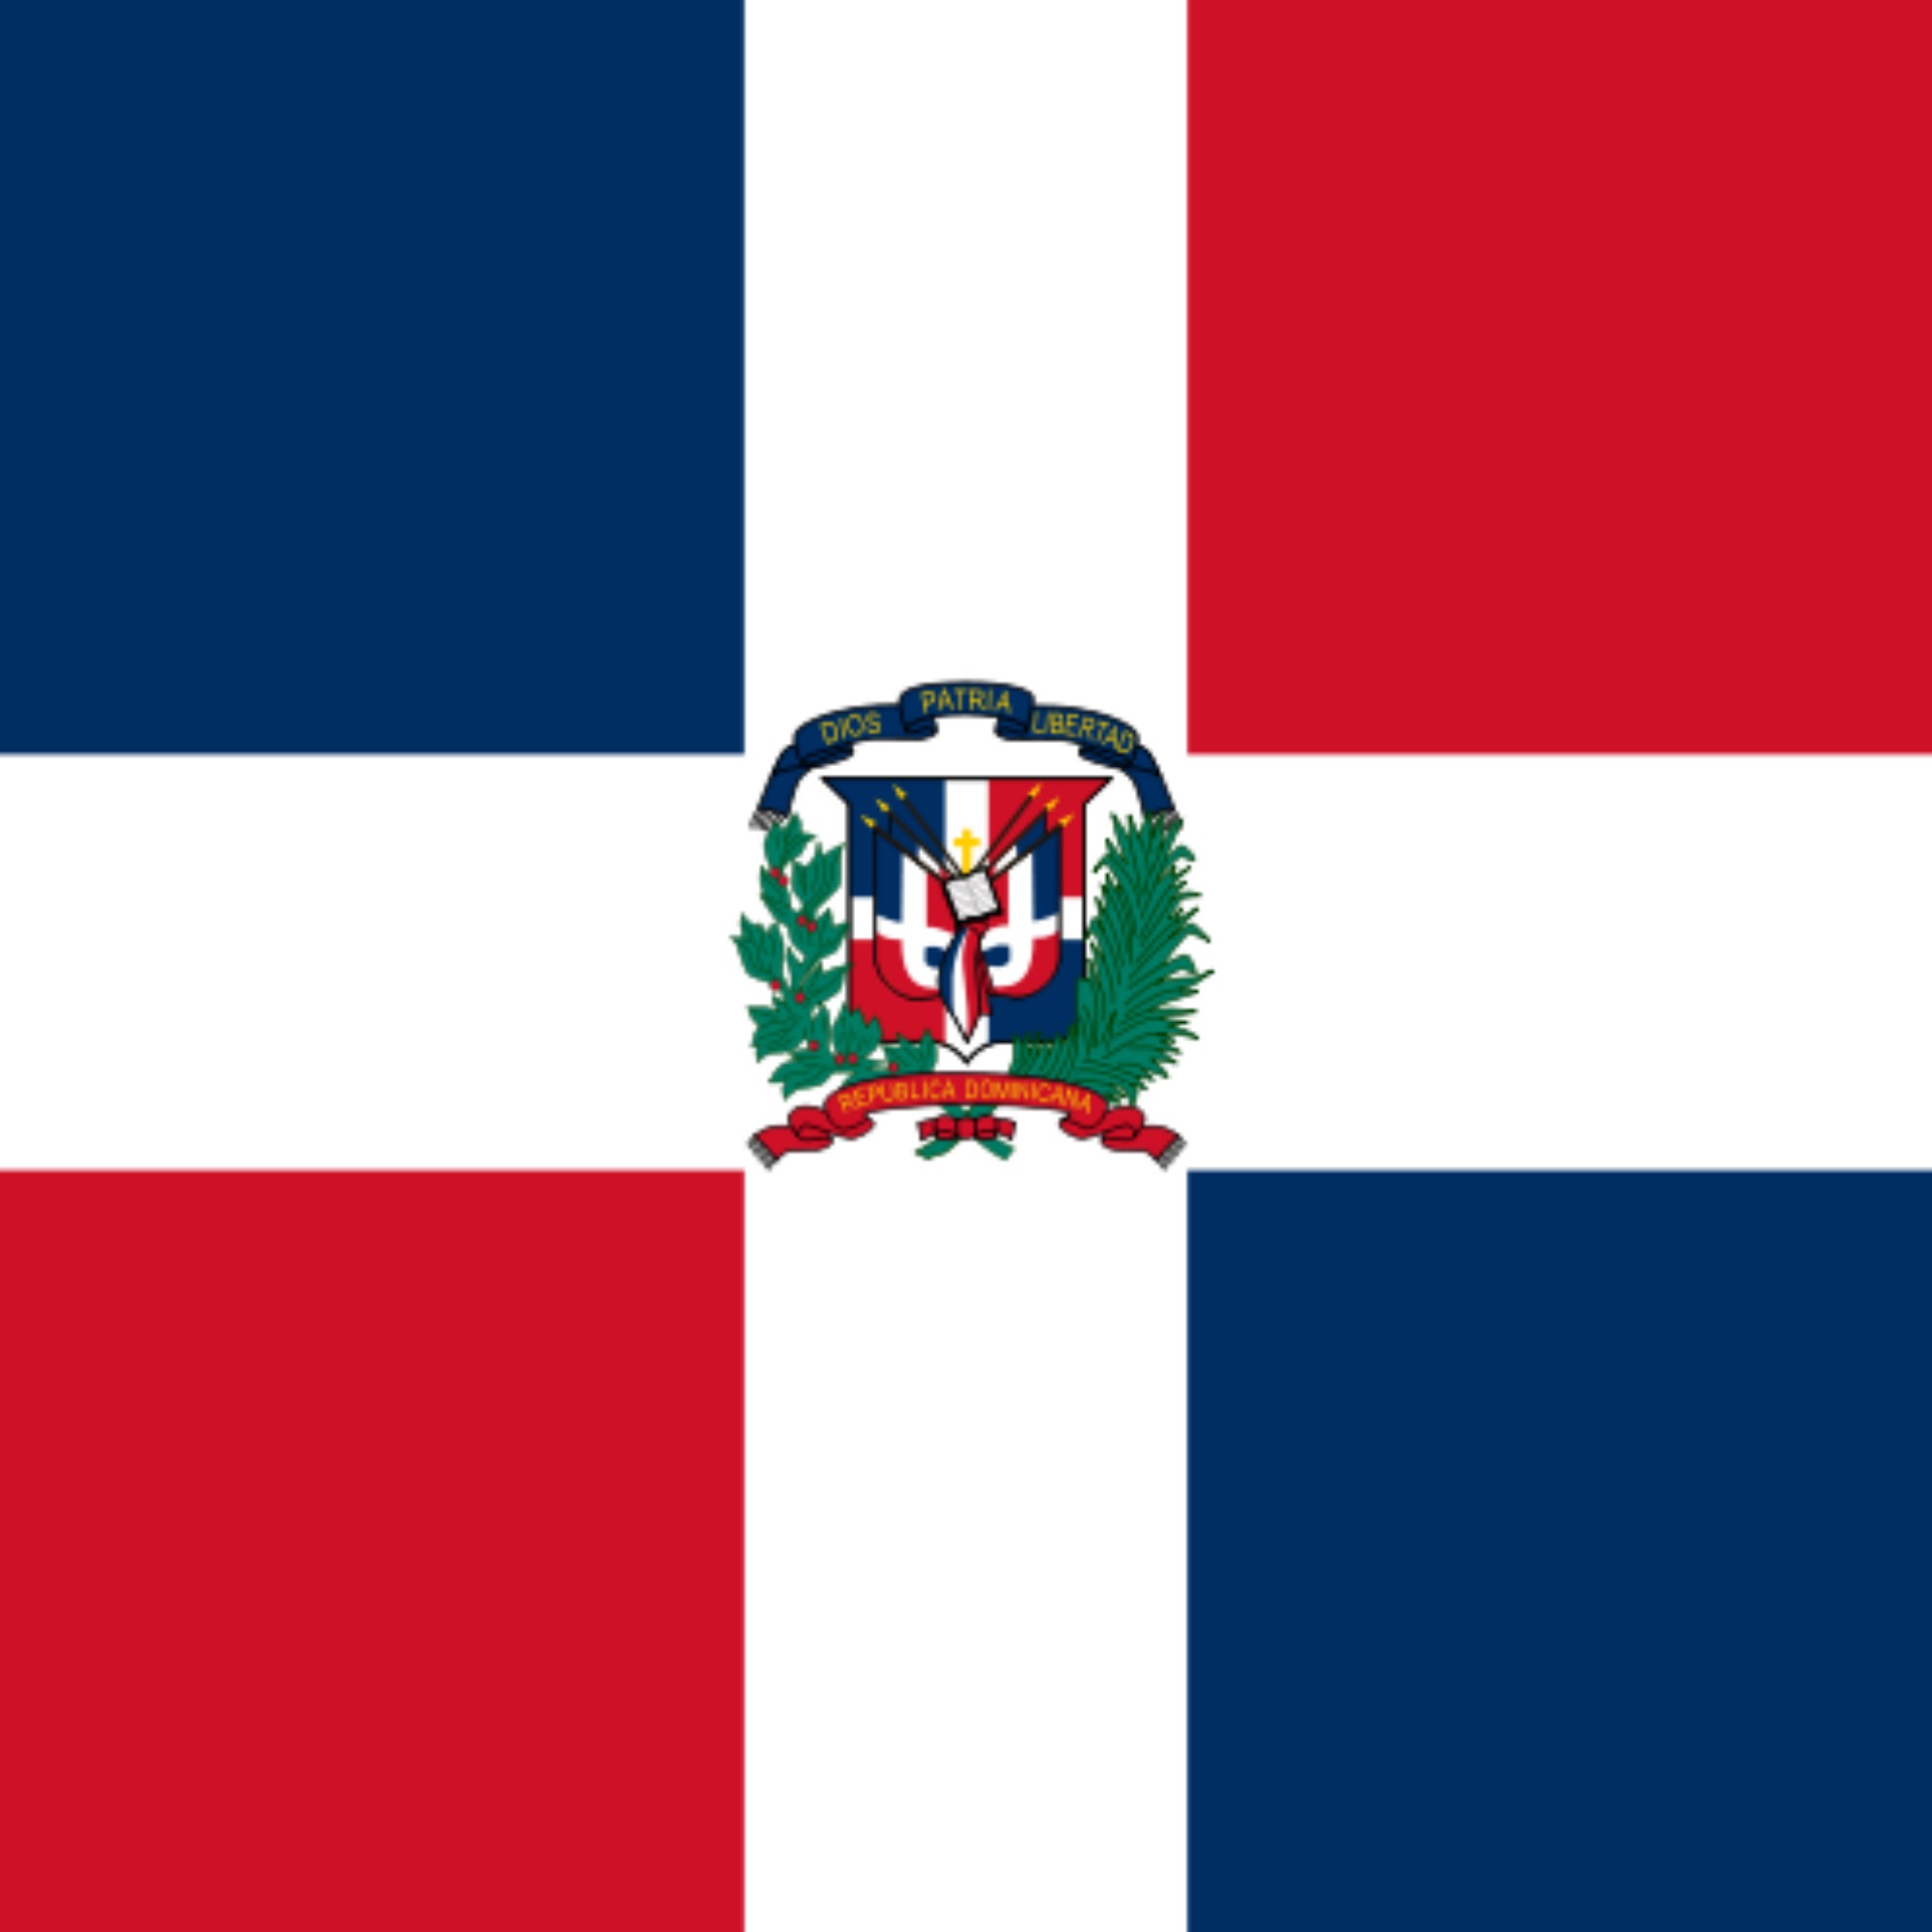 Honorary Consulate of the Dominican Republic (Alicante)